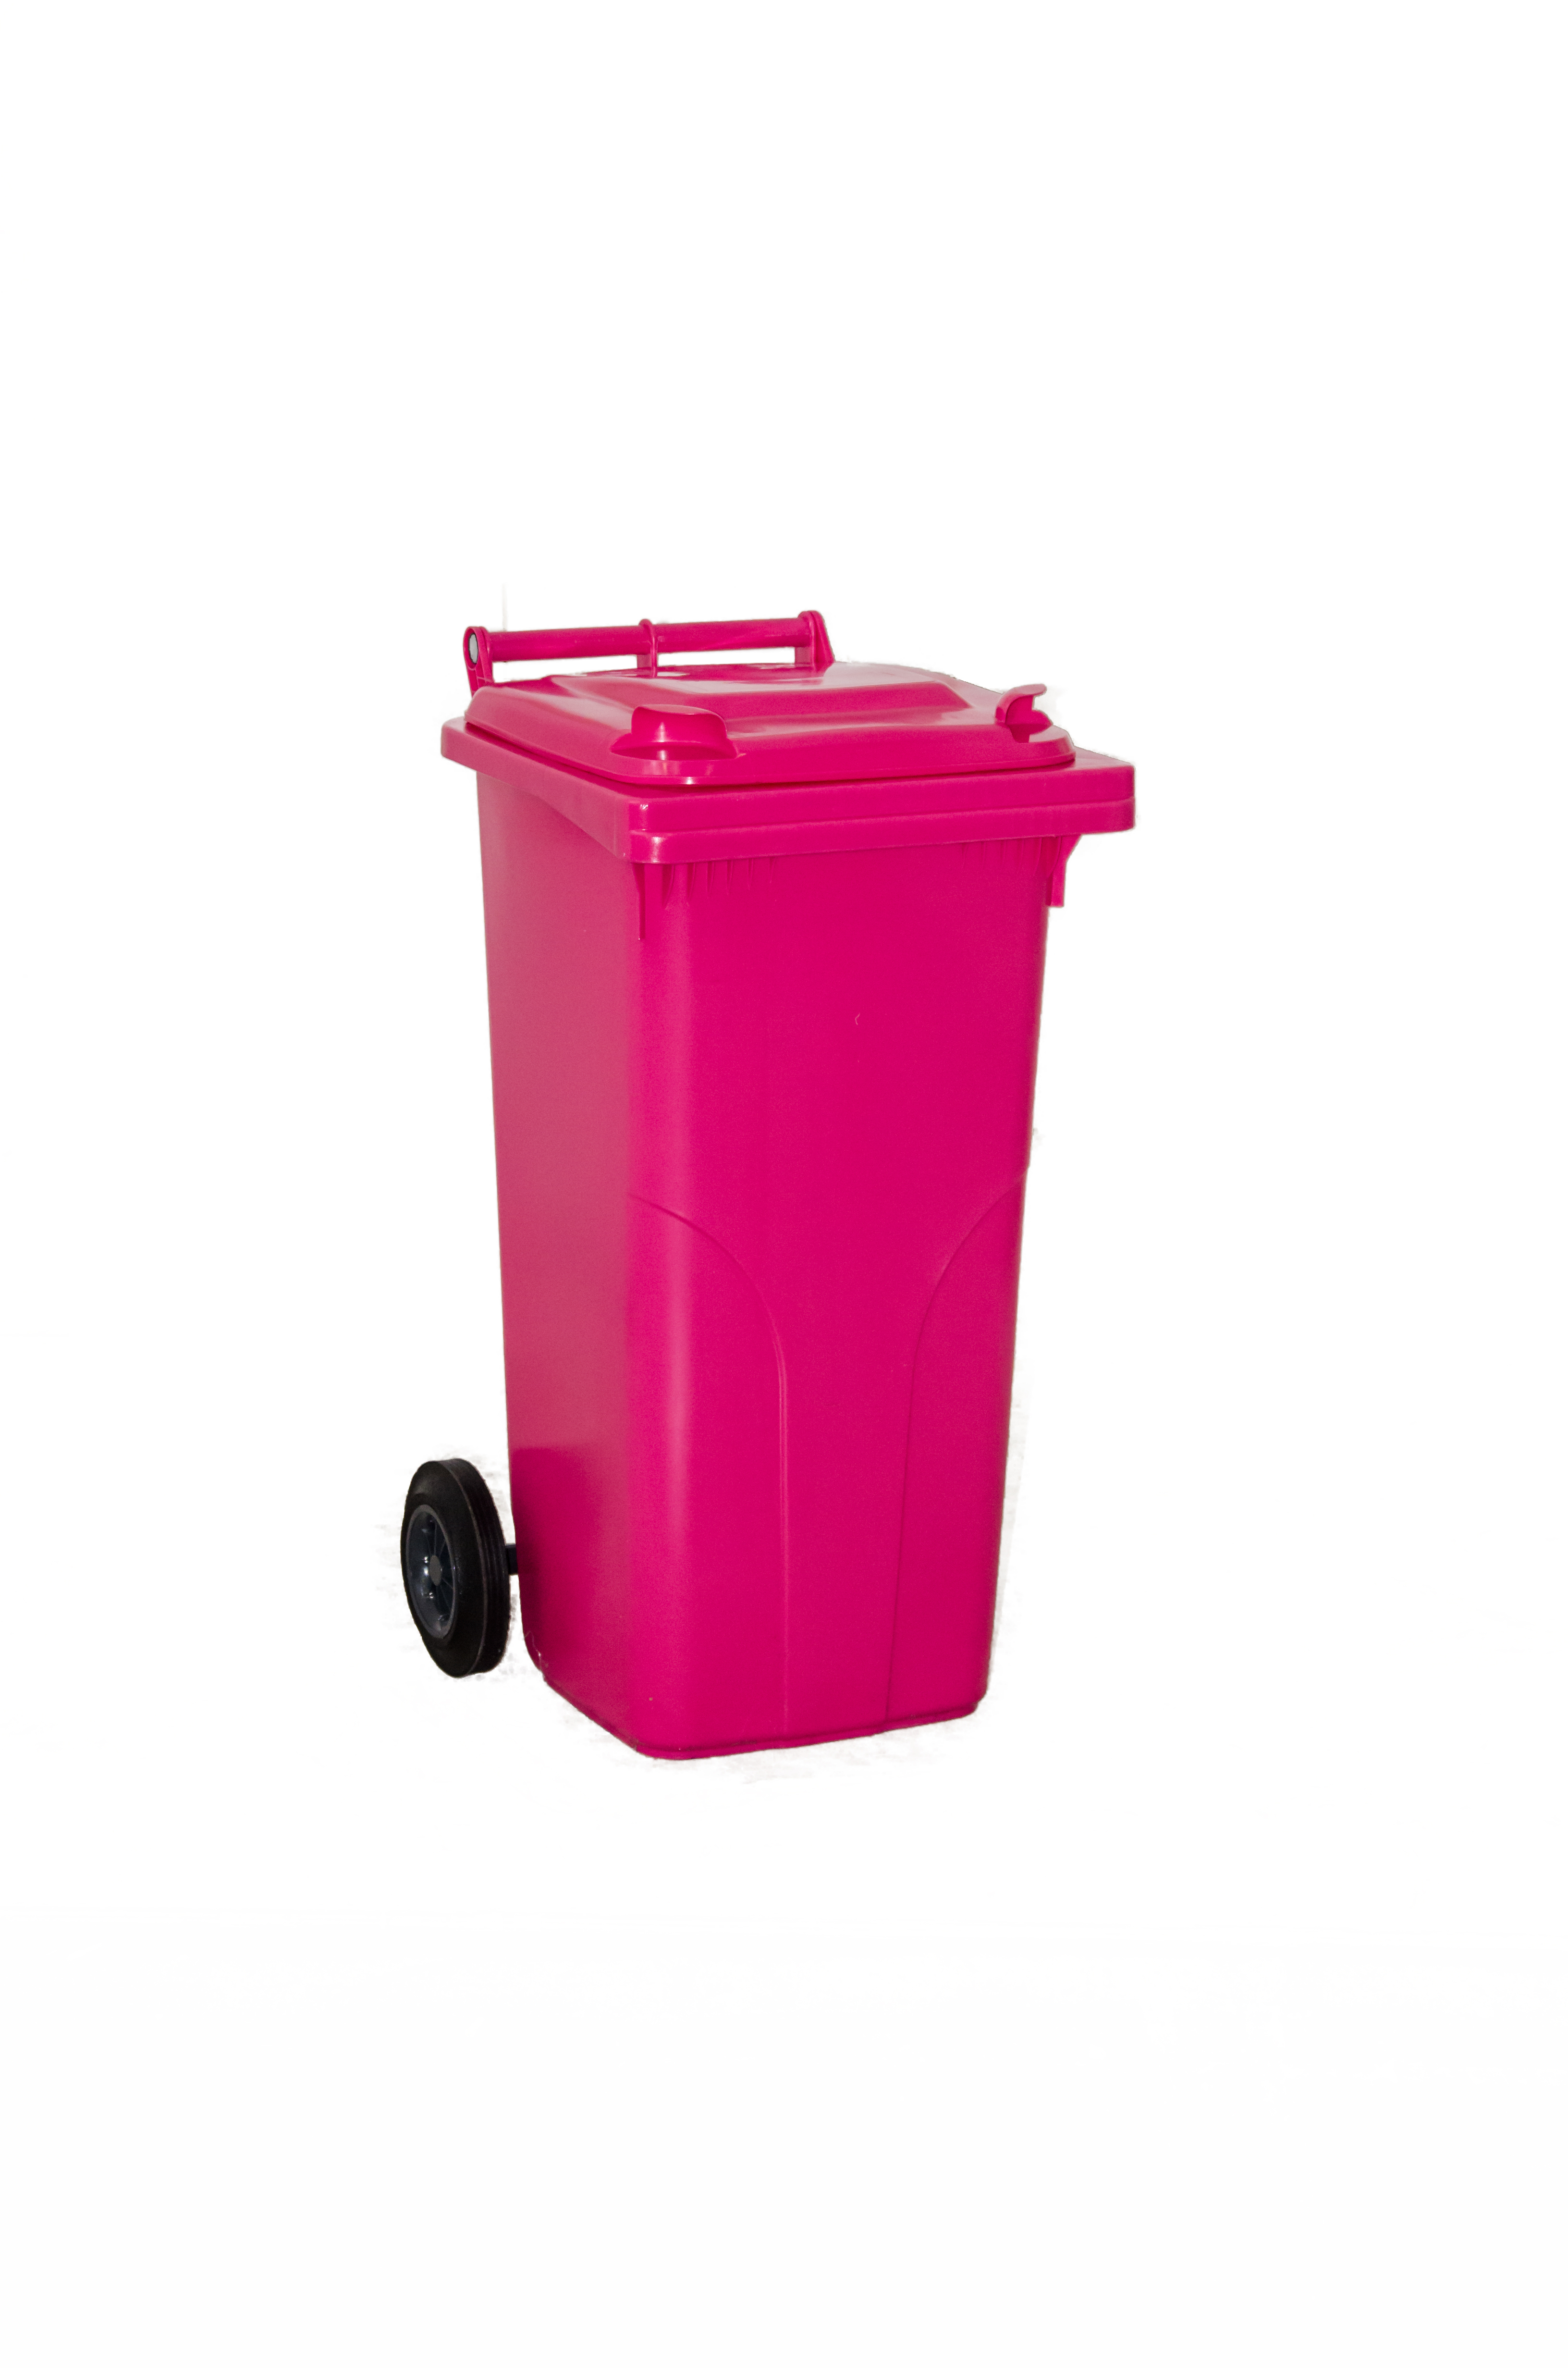 Pink Wheelie Bins For Toy Storage within size 3264 X 4928